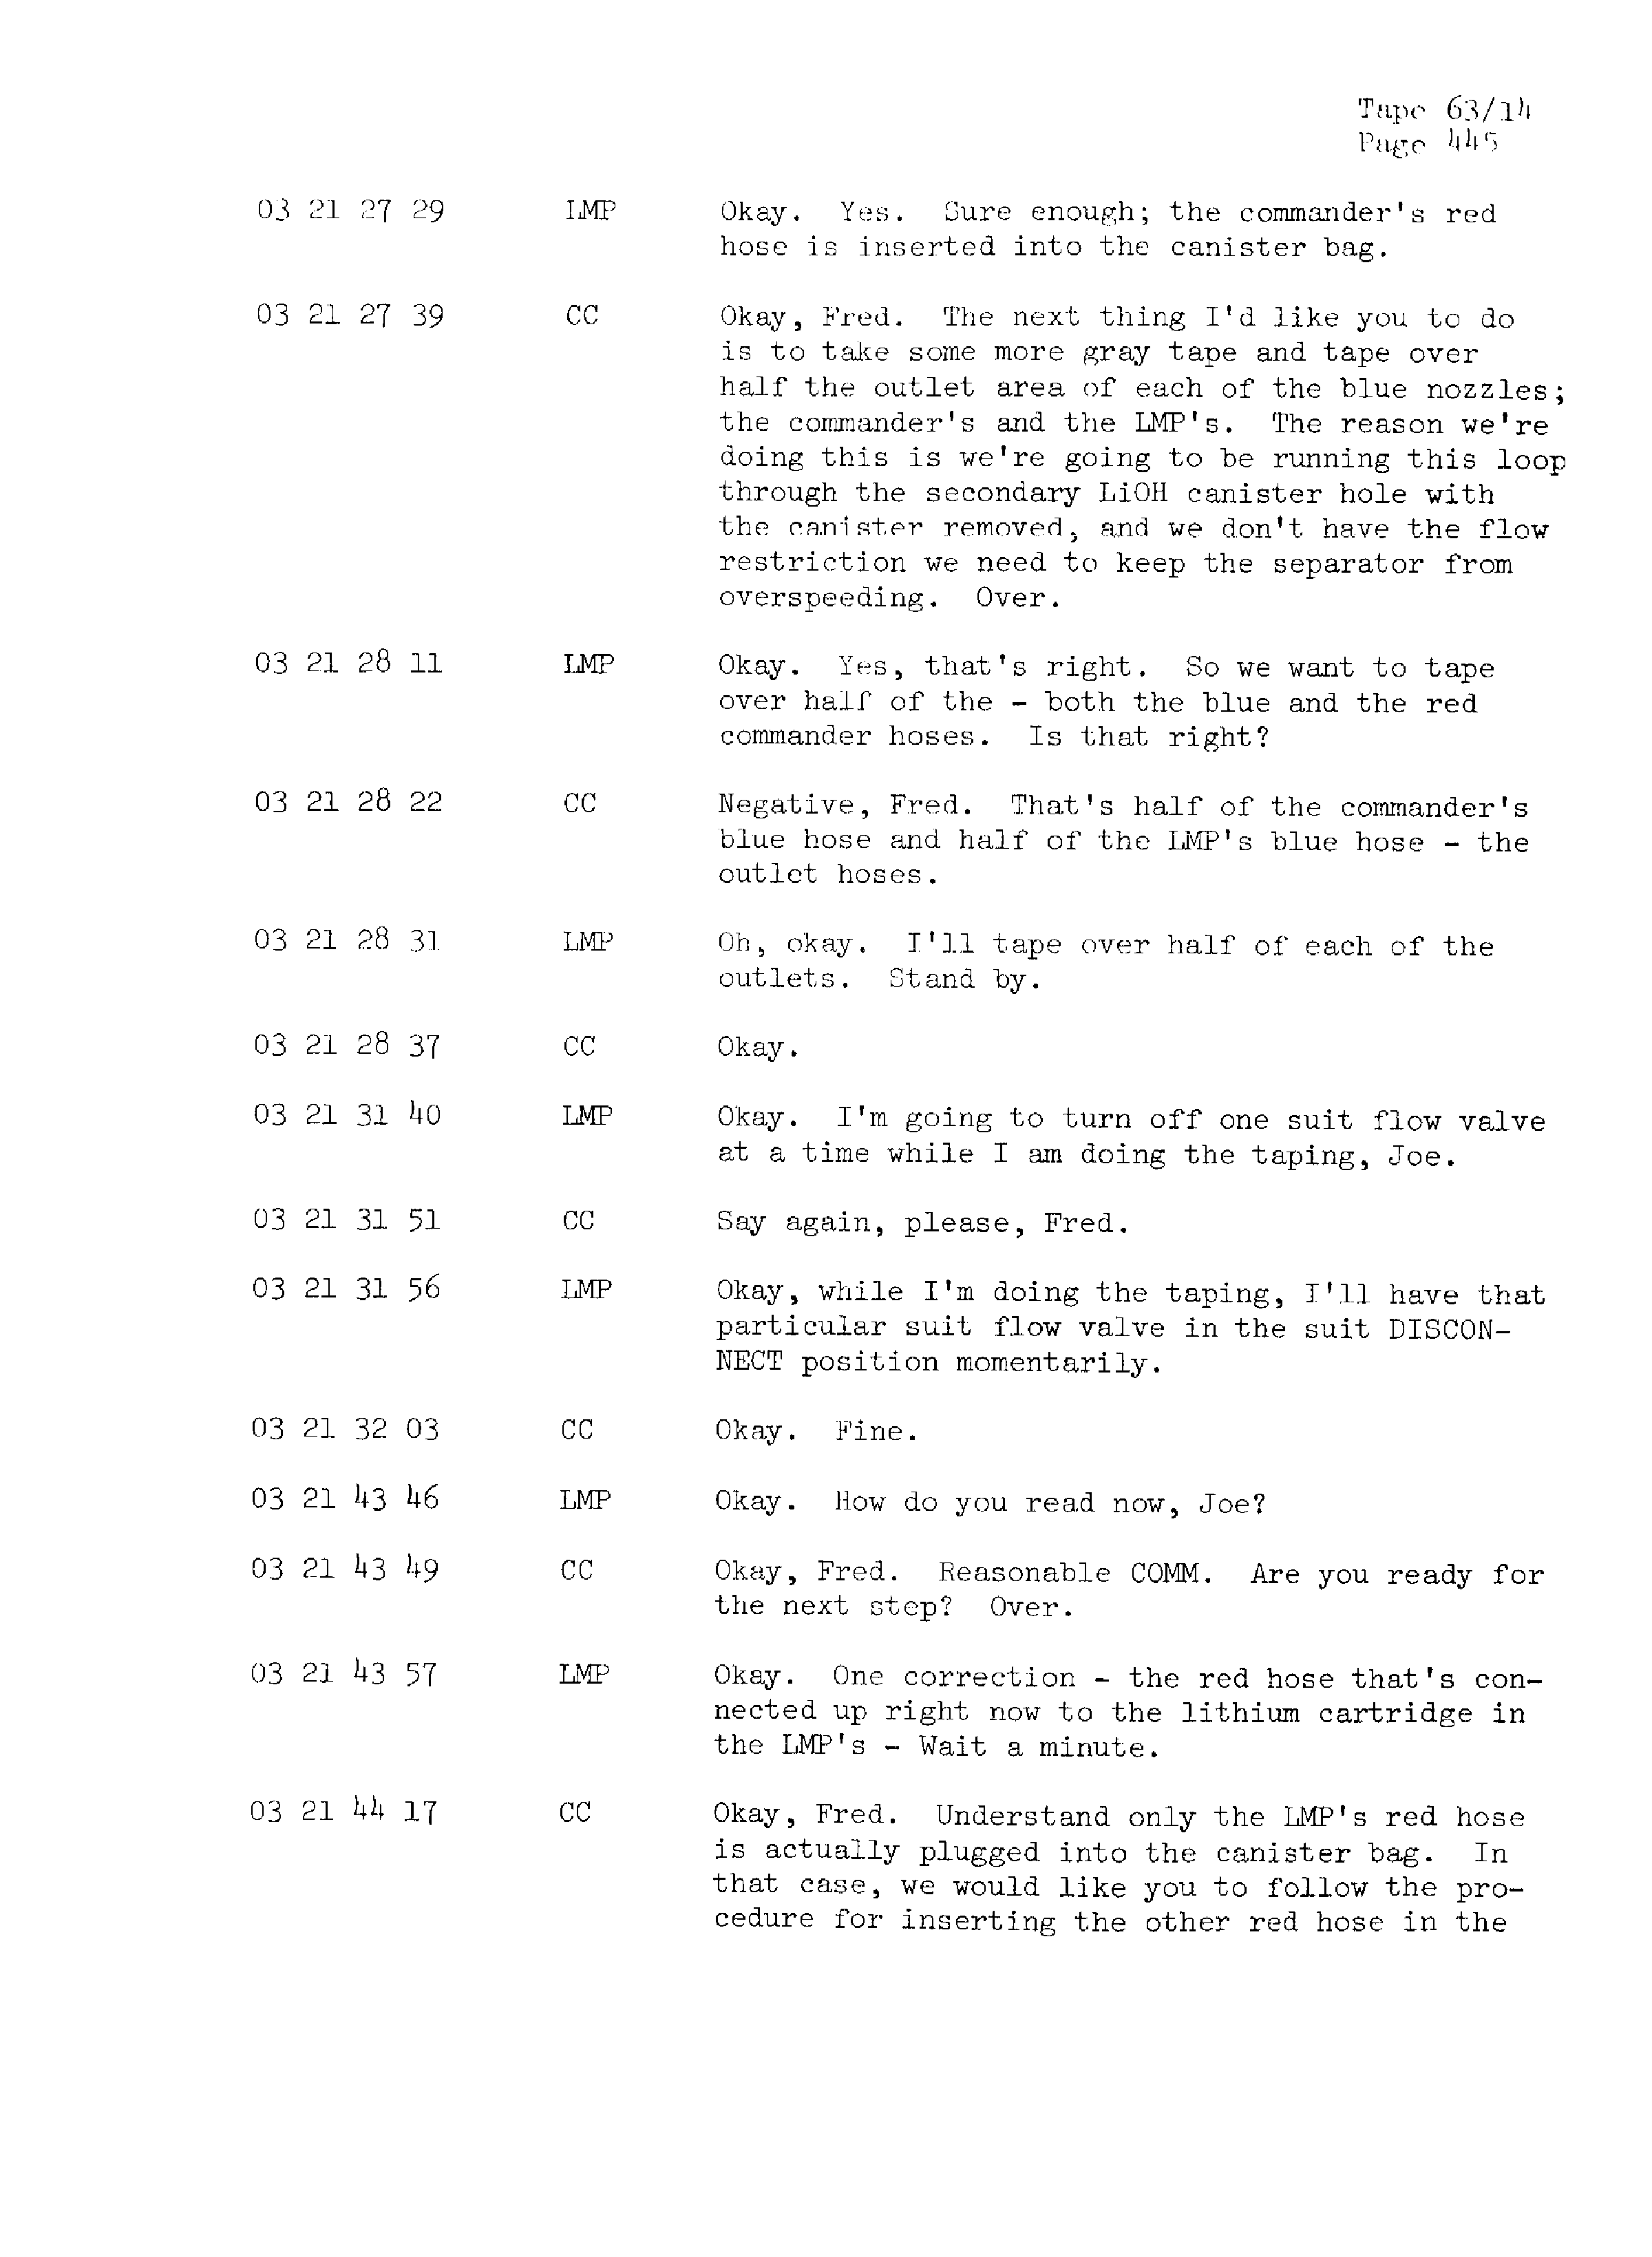 Page 452 of Apollo 13’s original transcript